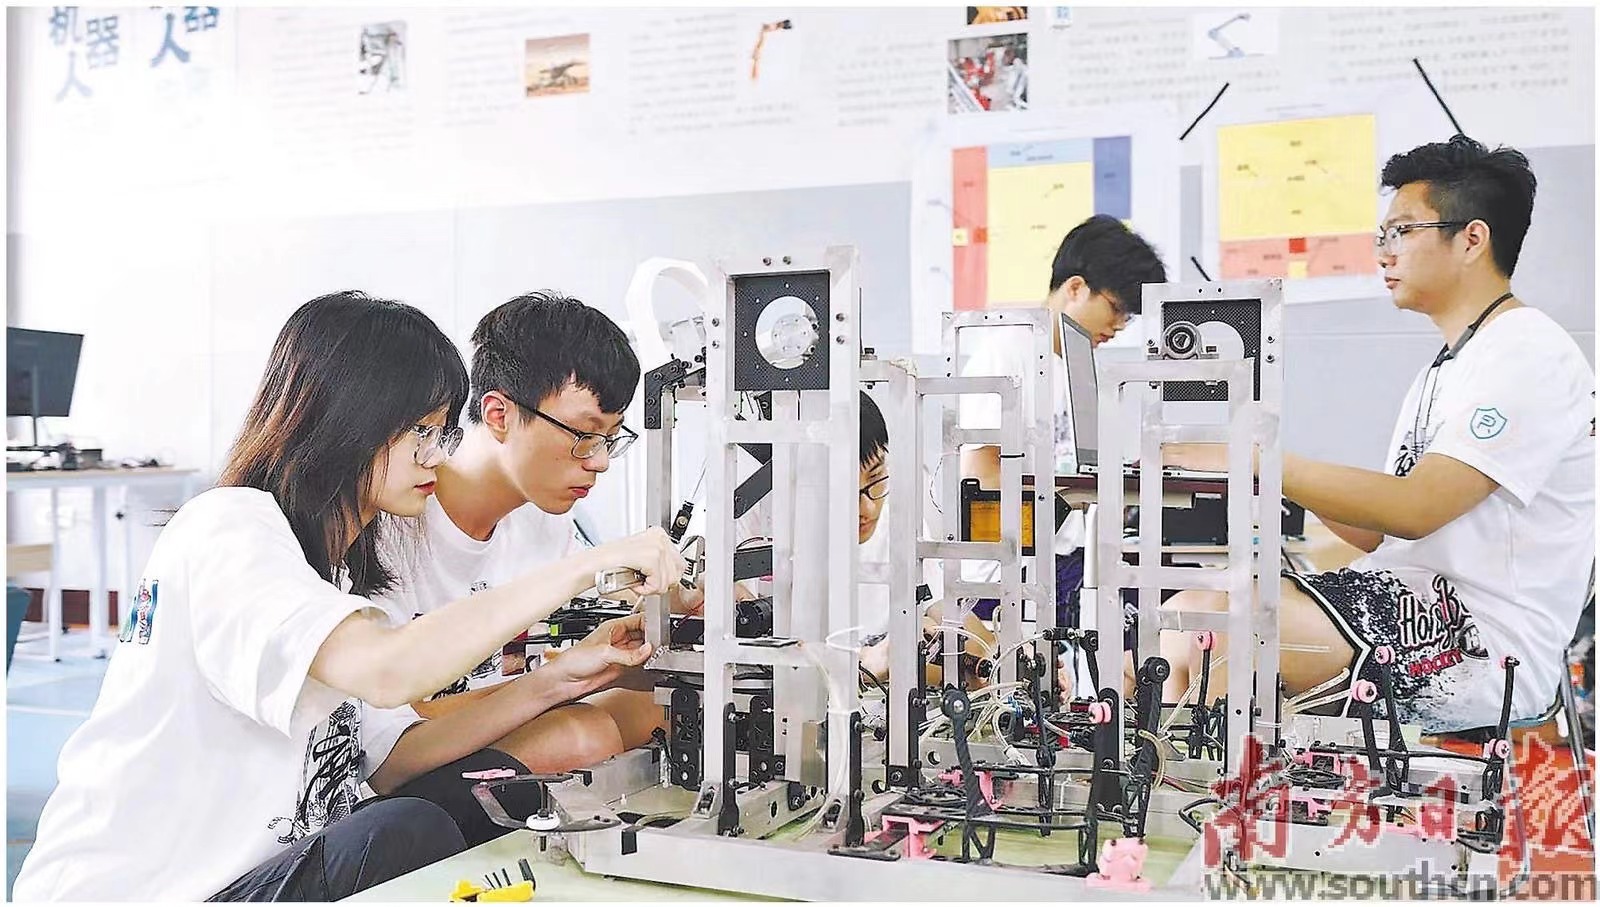 广东工业大学粤港机器人学院多专业融合培养人才。 受访者供图